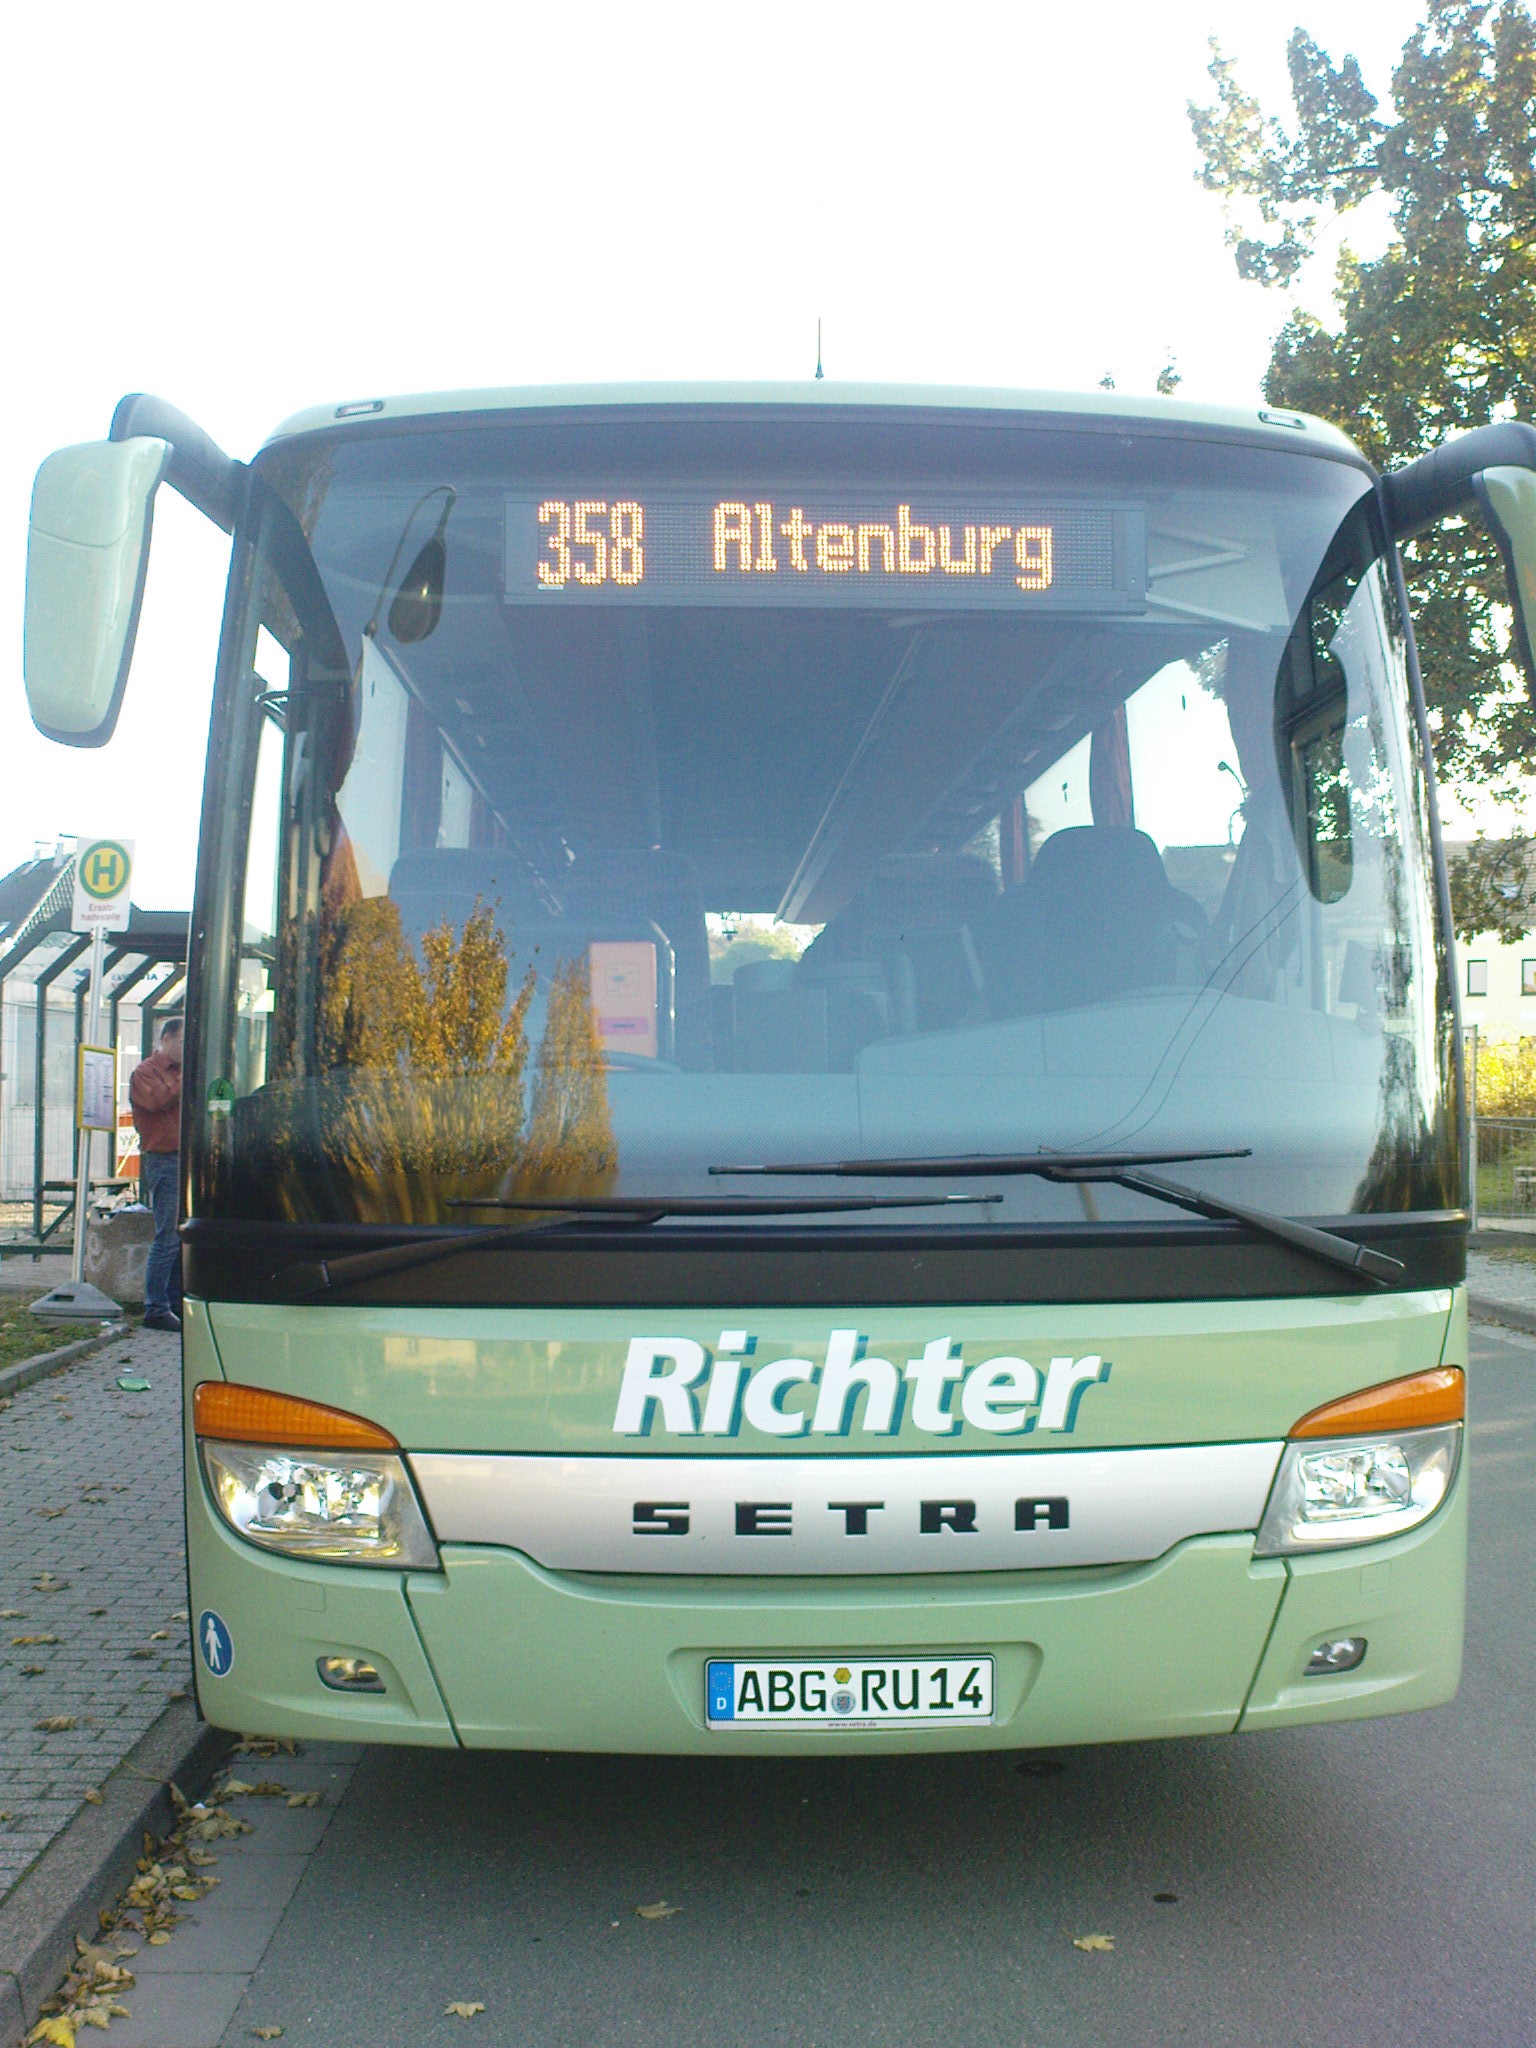 More information about "Richter Reisen Repaint für D92"